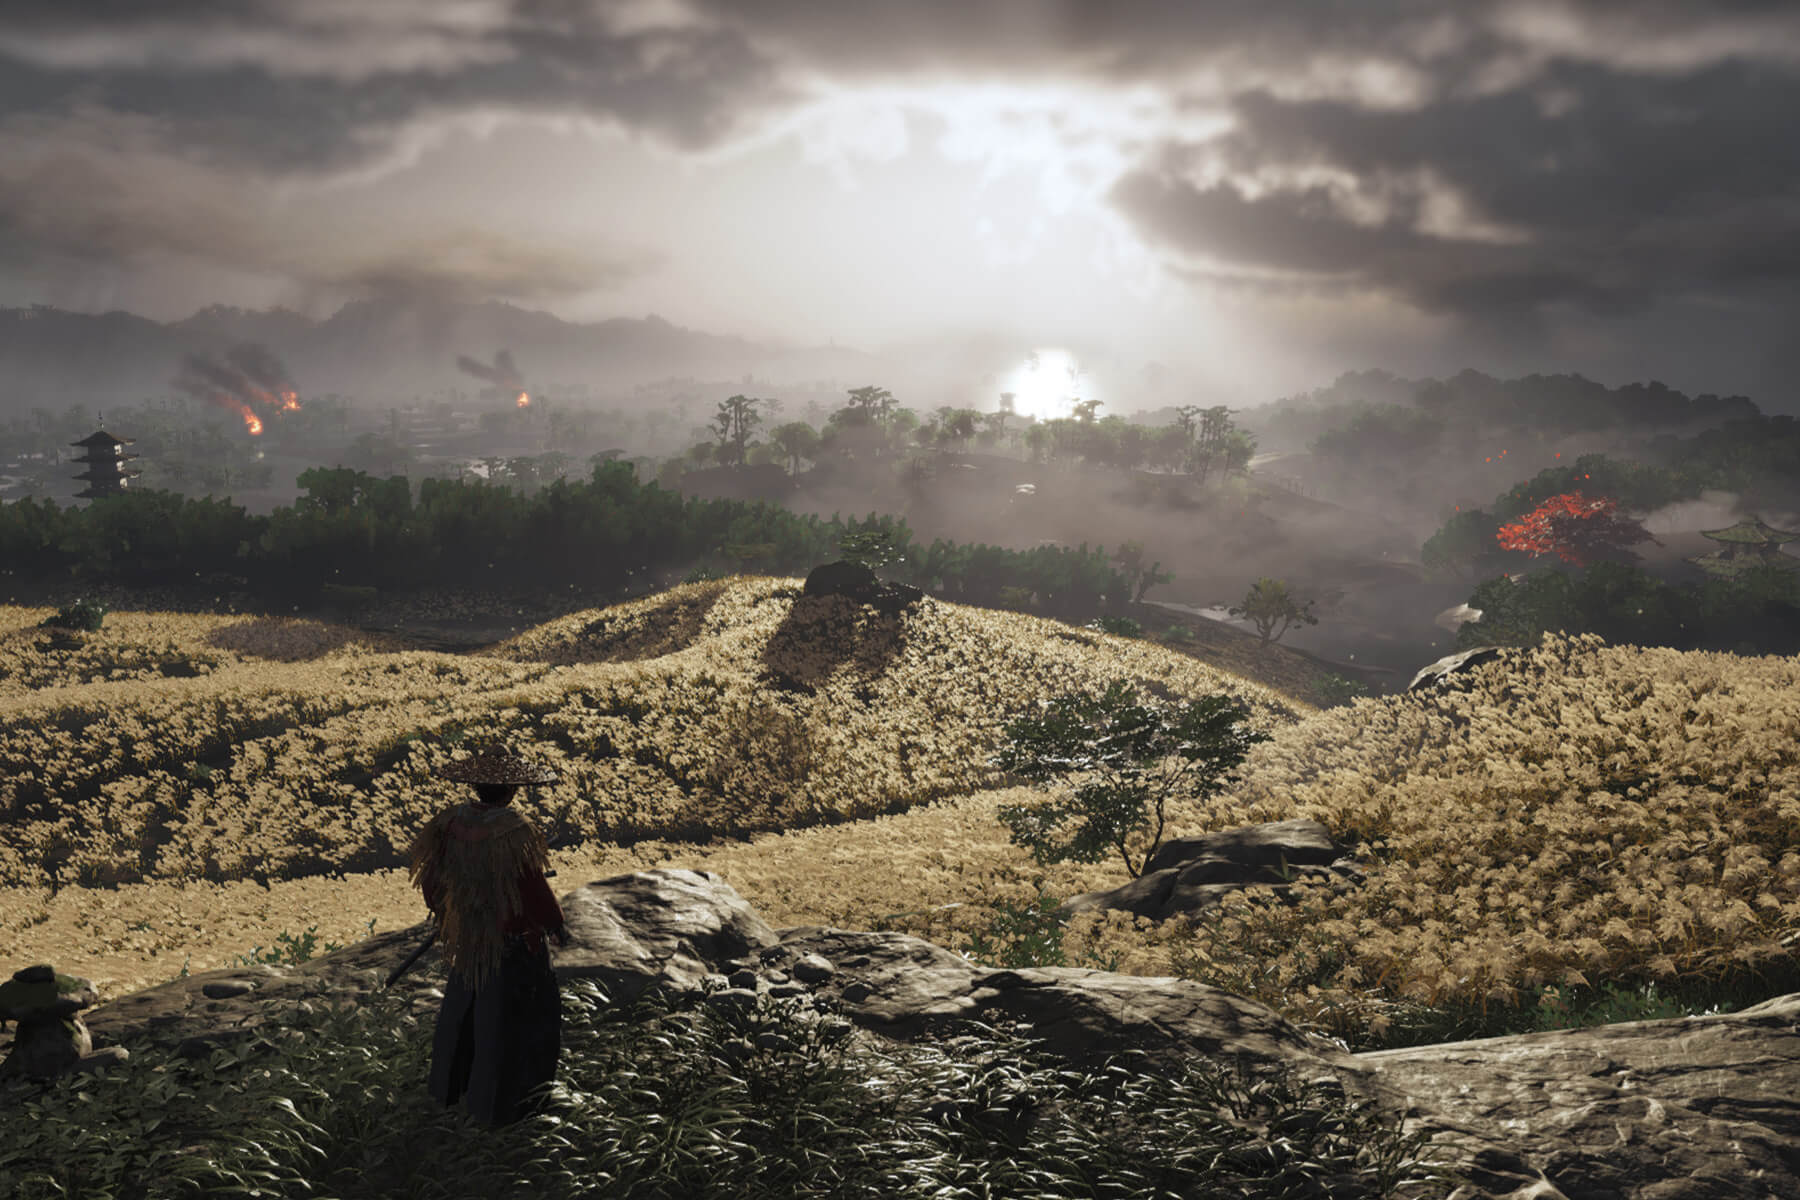 A samurai stands before a field overlooking a besieged village